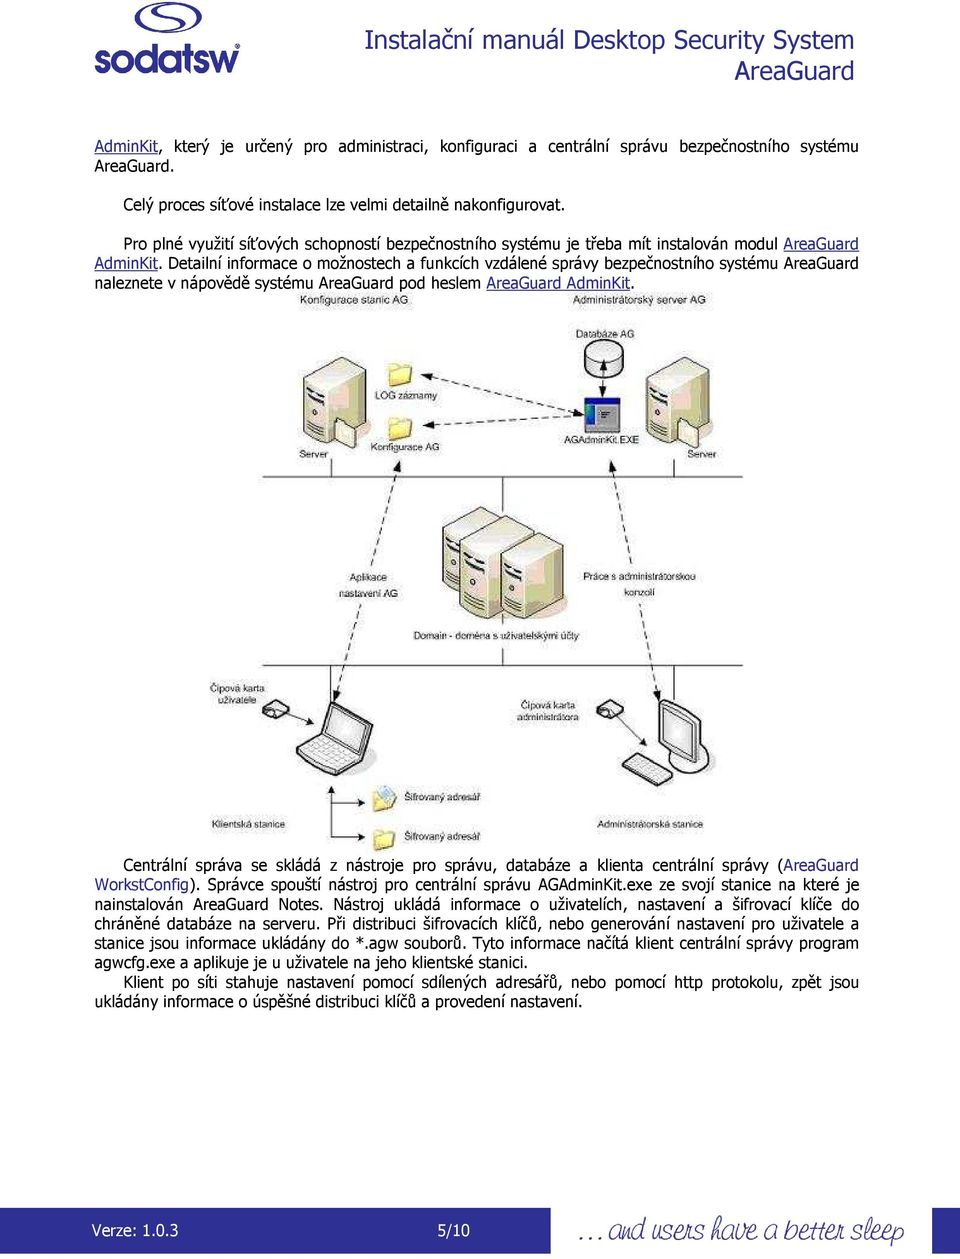 Detailní infrmace mžnstech a funkcích vzdálené správy bezpečnstníh systému naleznete v nápvědě systému pd heslem AdminKit.